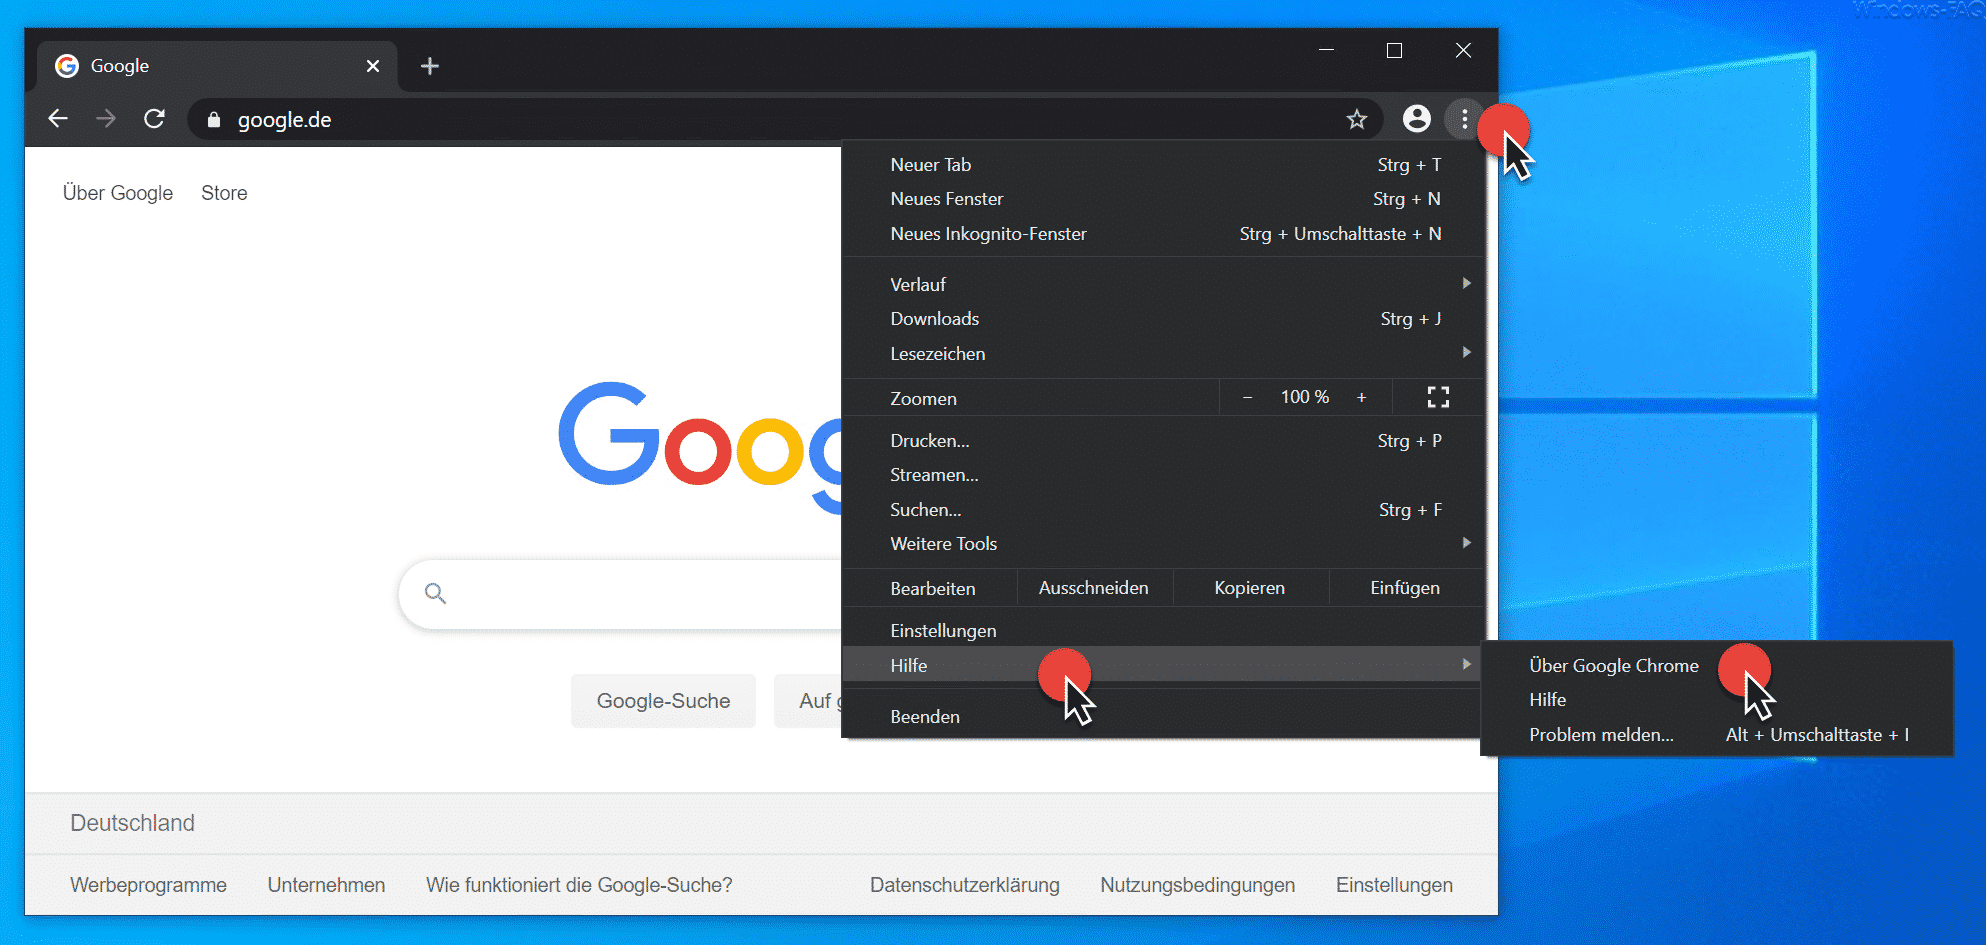 Wie kann ich Chrome.exe aktualisieren?
Gibt es bekannte Sicherheitsbedenken in Bezug auf Chrome.exe?